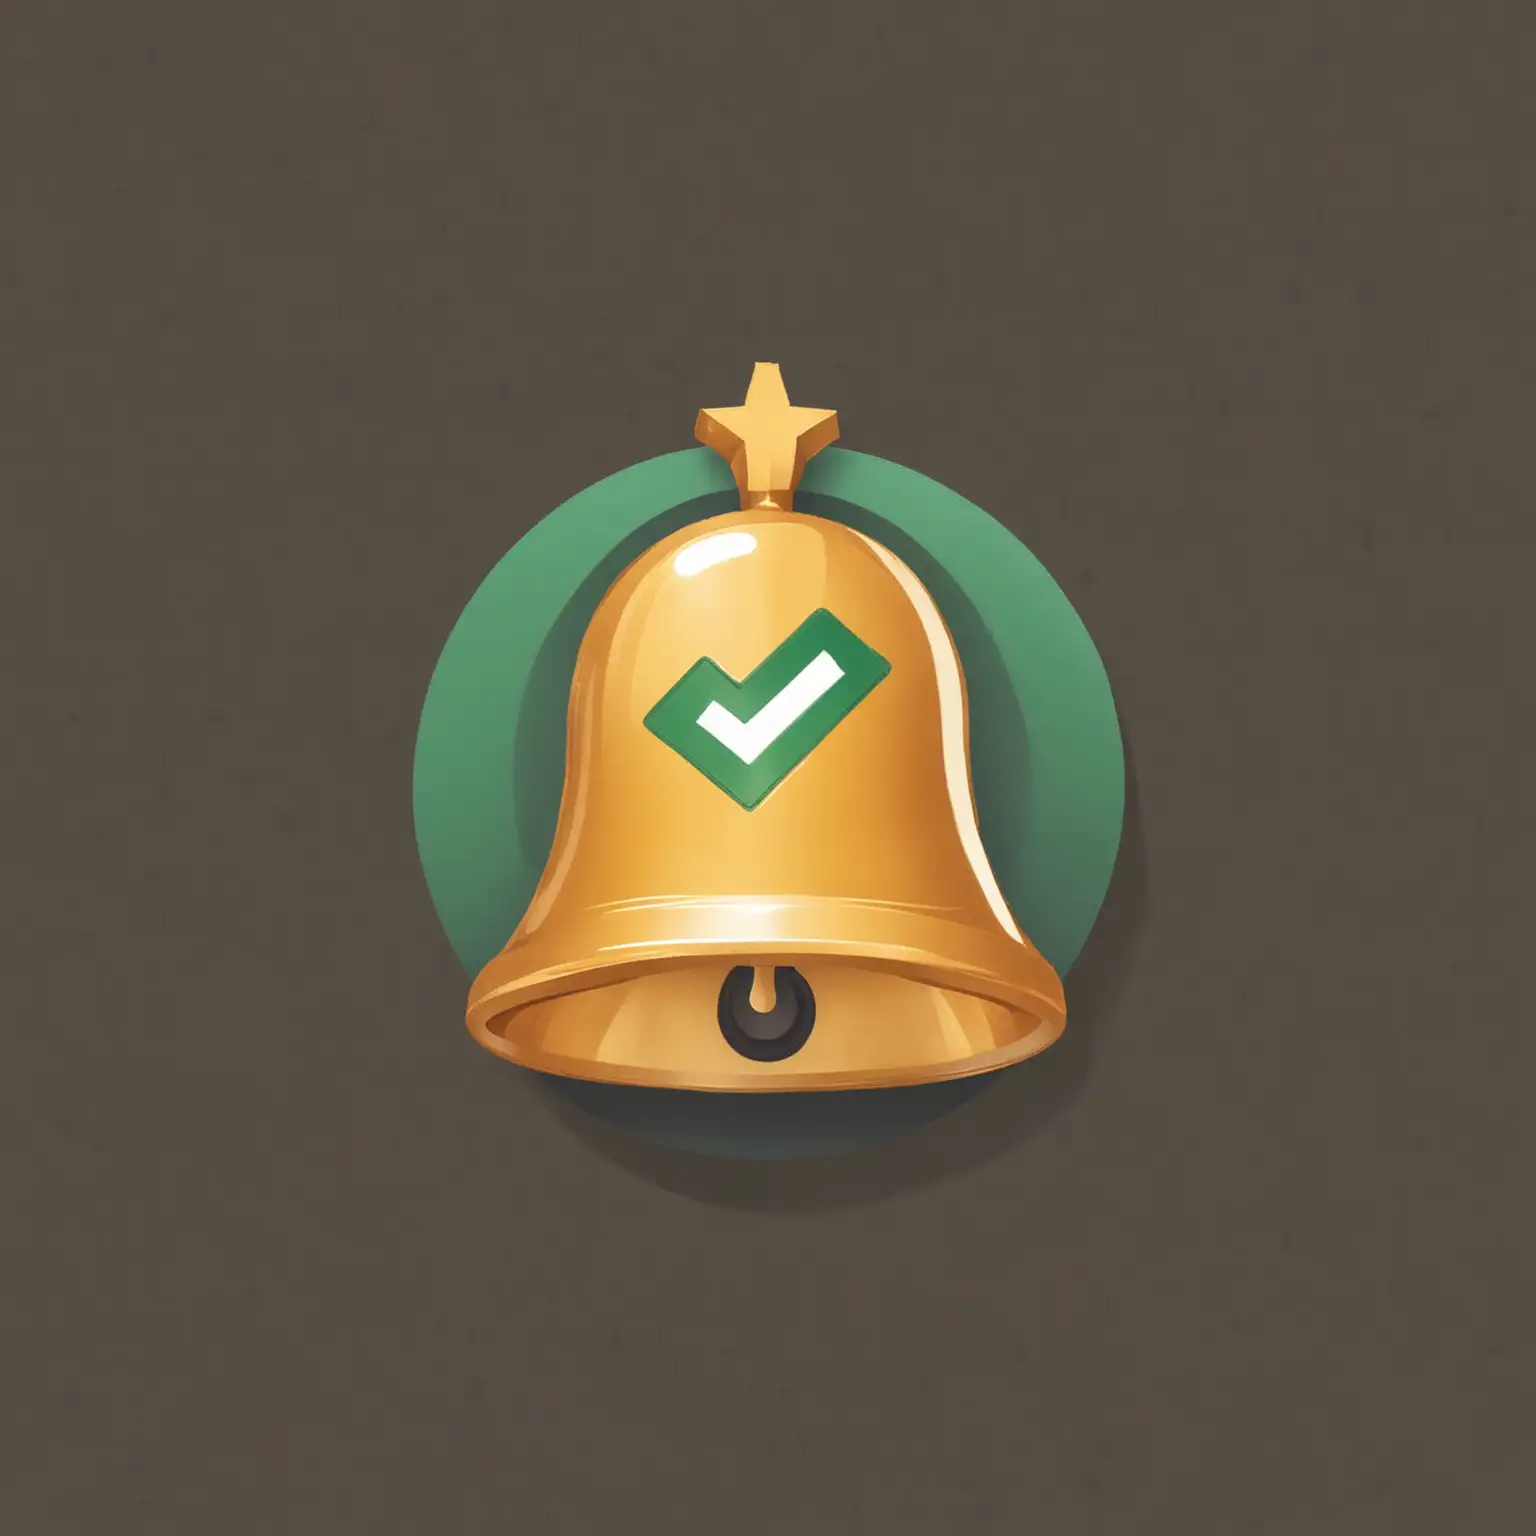 Une icône de cloche dorée avec une petite coche verte en bas à droite, indiquant que la notification a été envoyée avec succès.